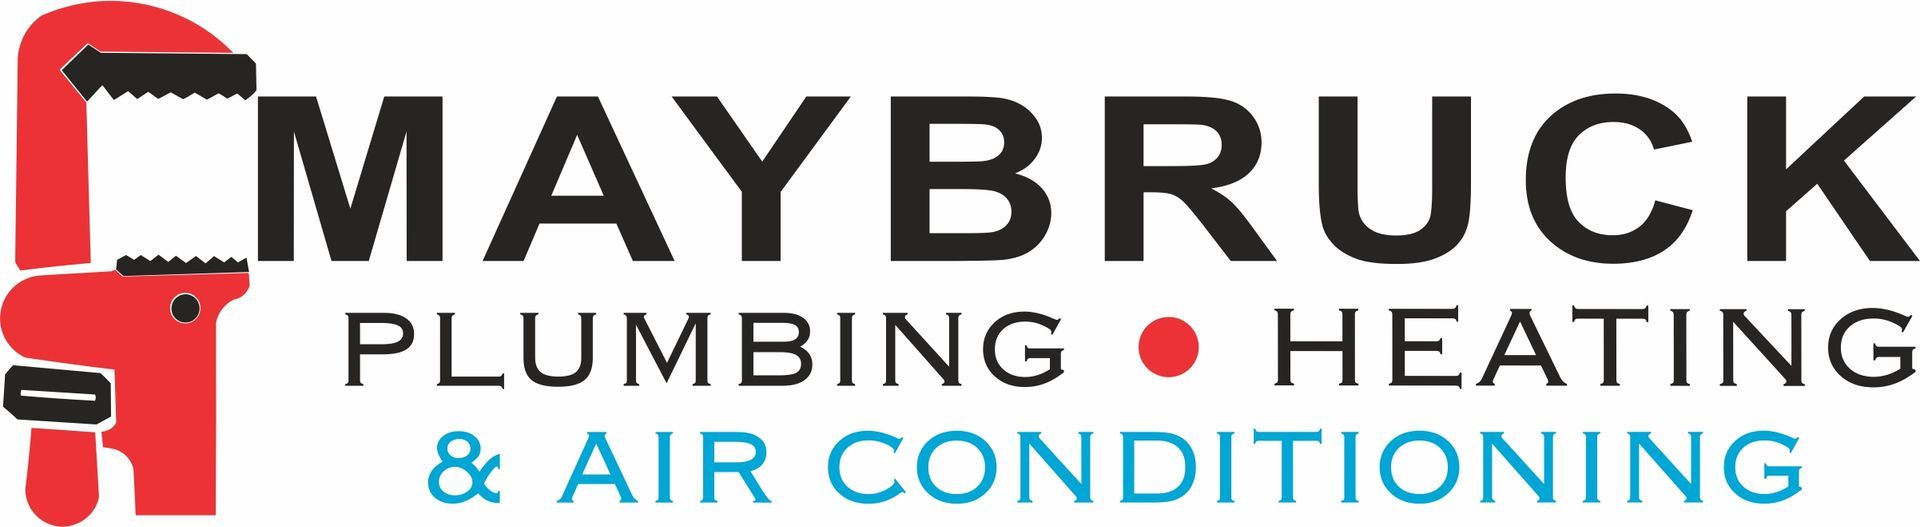 Maybruck Plumbing & Heating - Logo